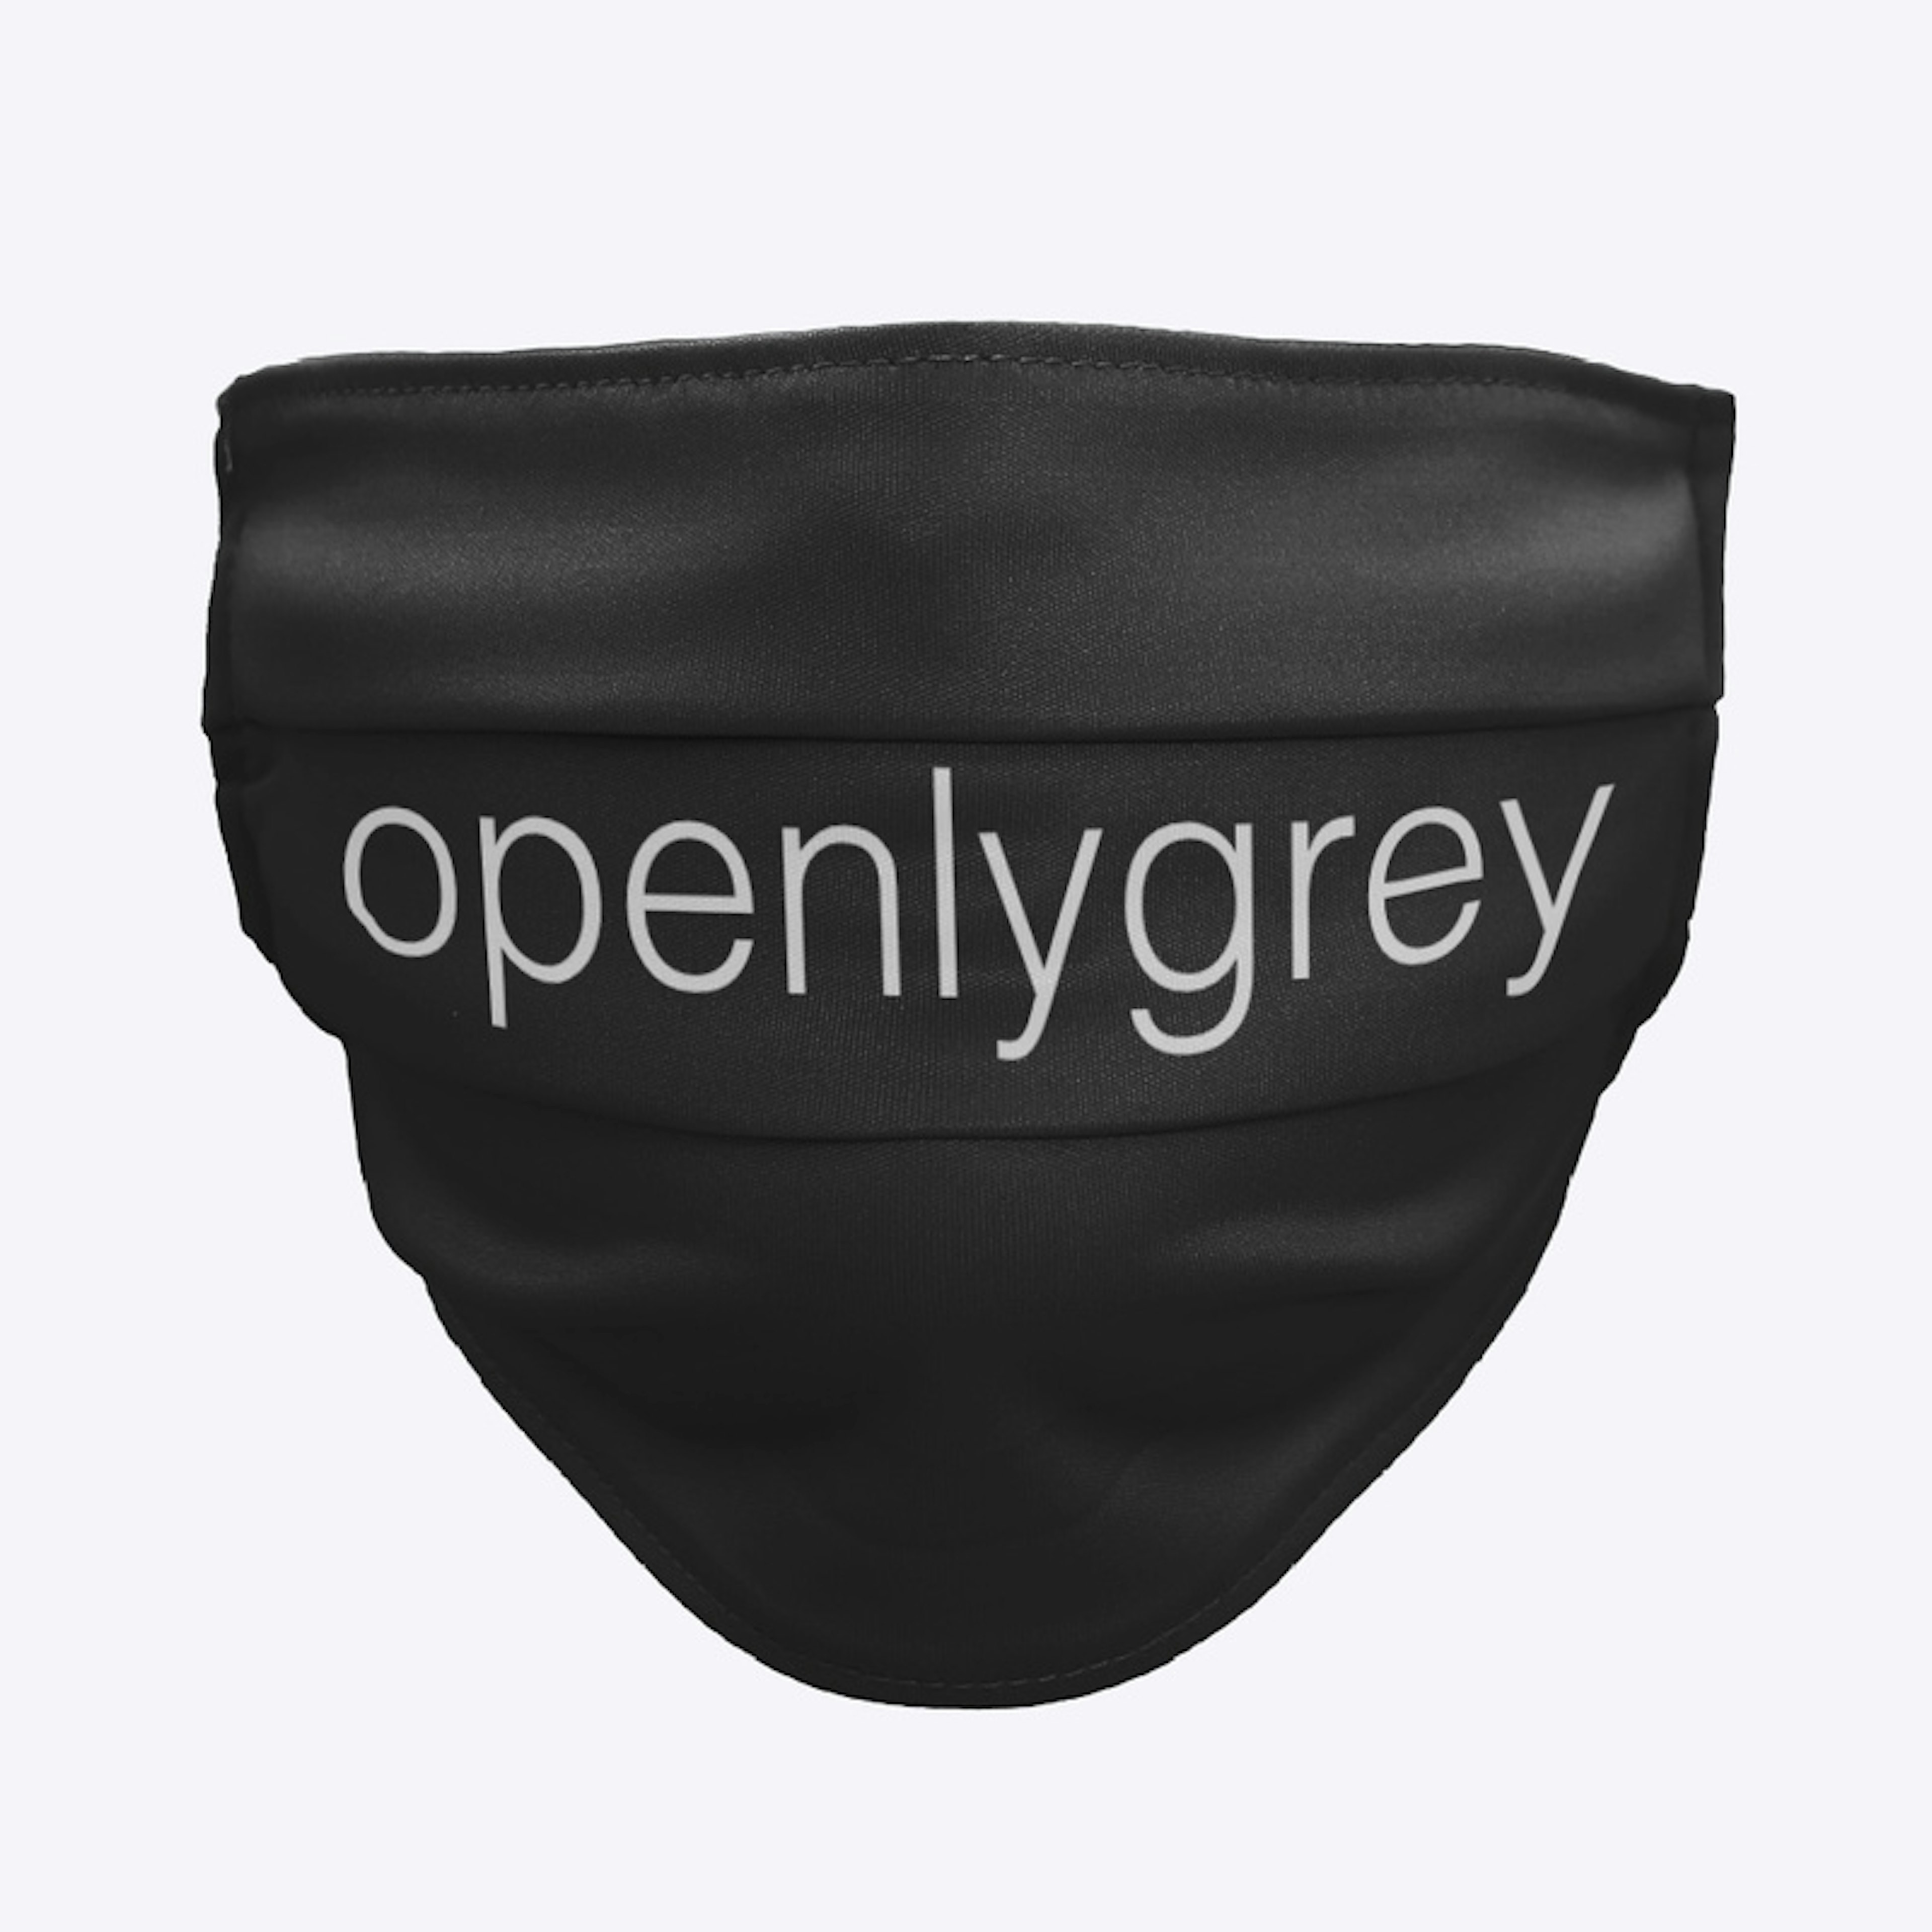 Openly Grey Mask